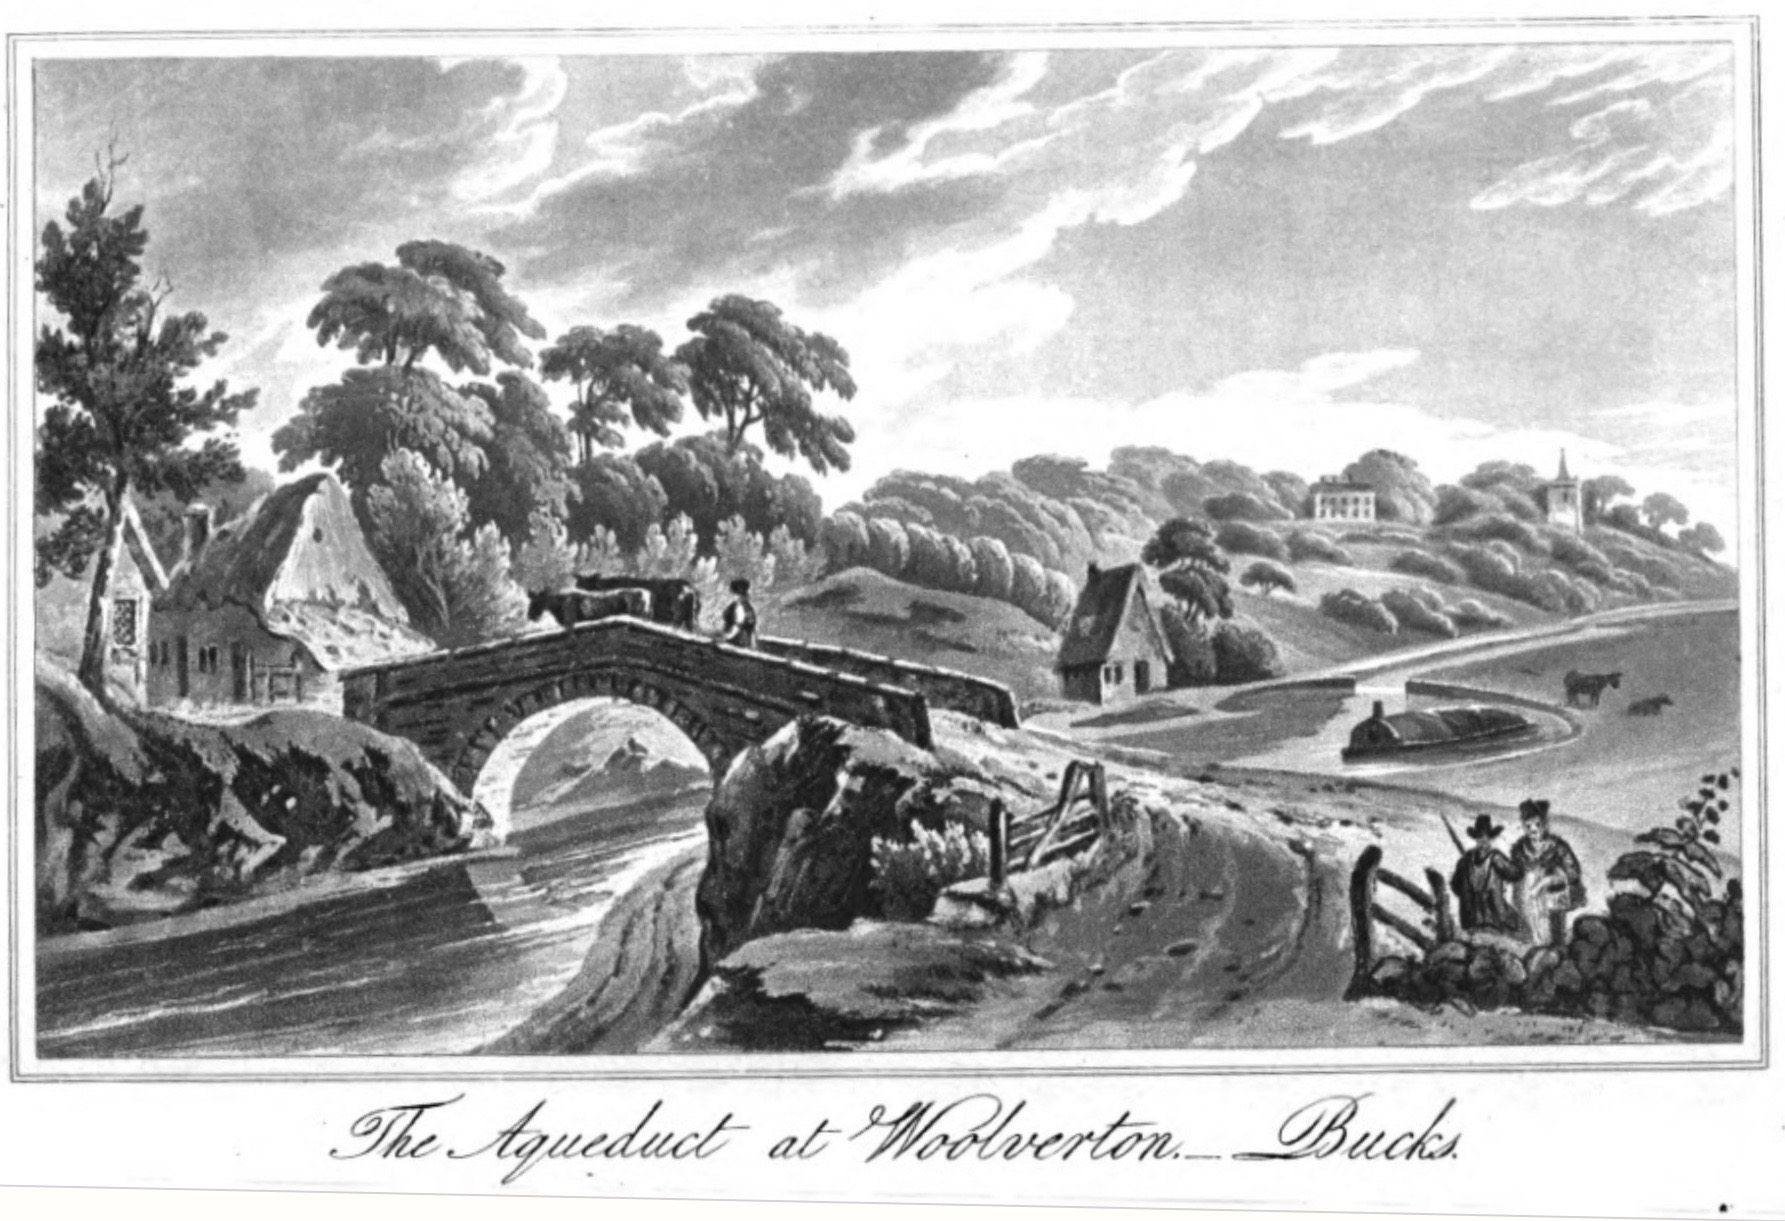 The Aqueduct at Wolverton, — Bucks.